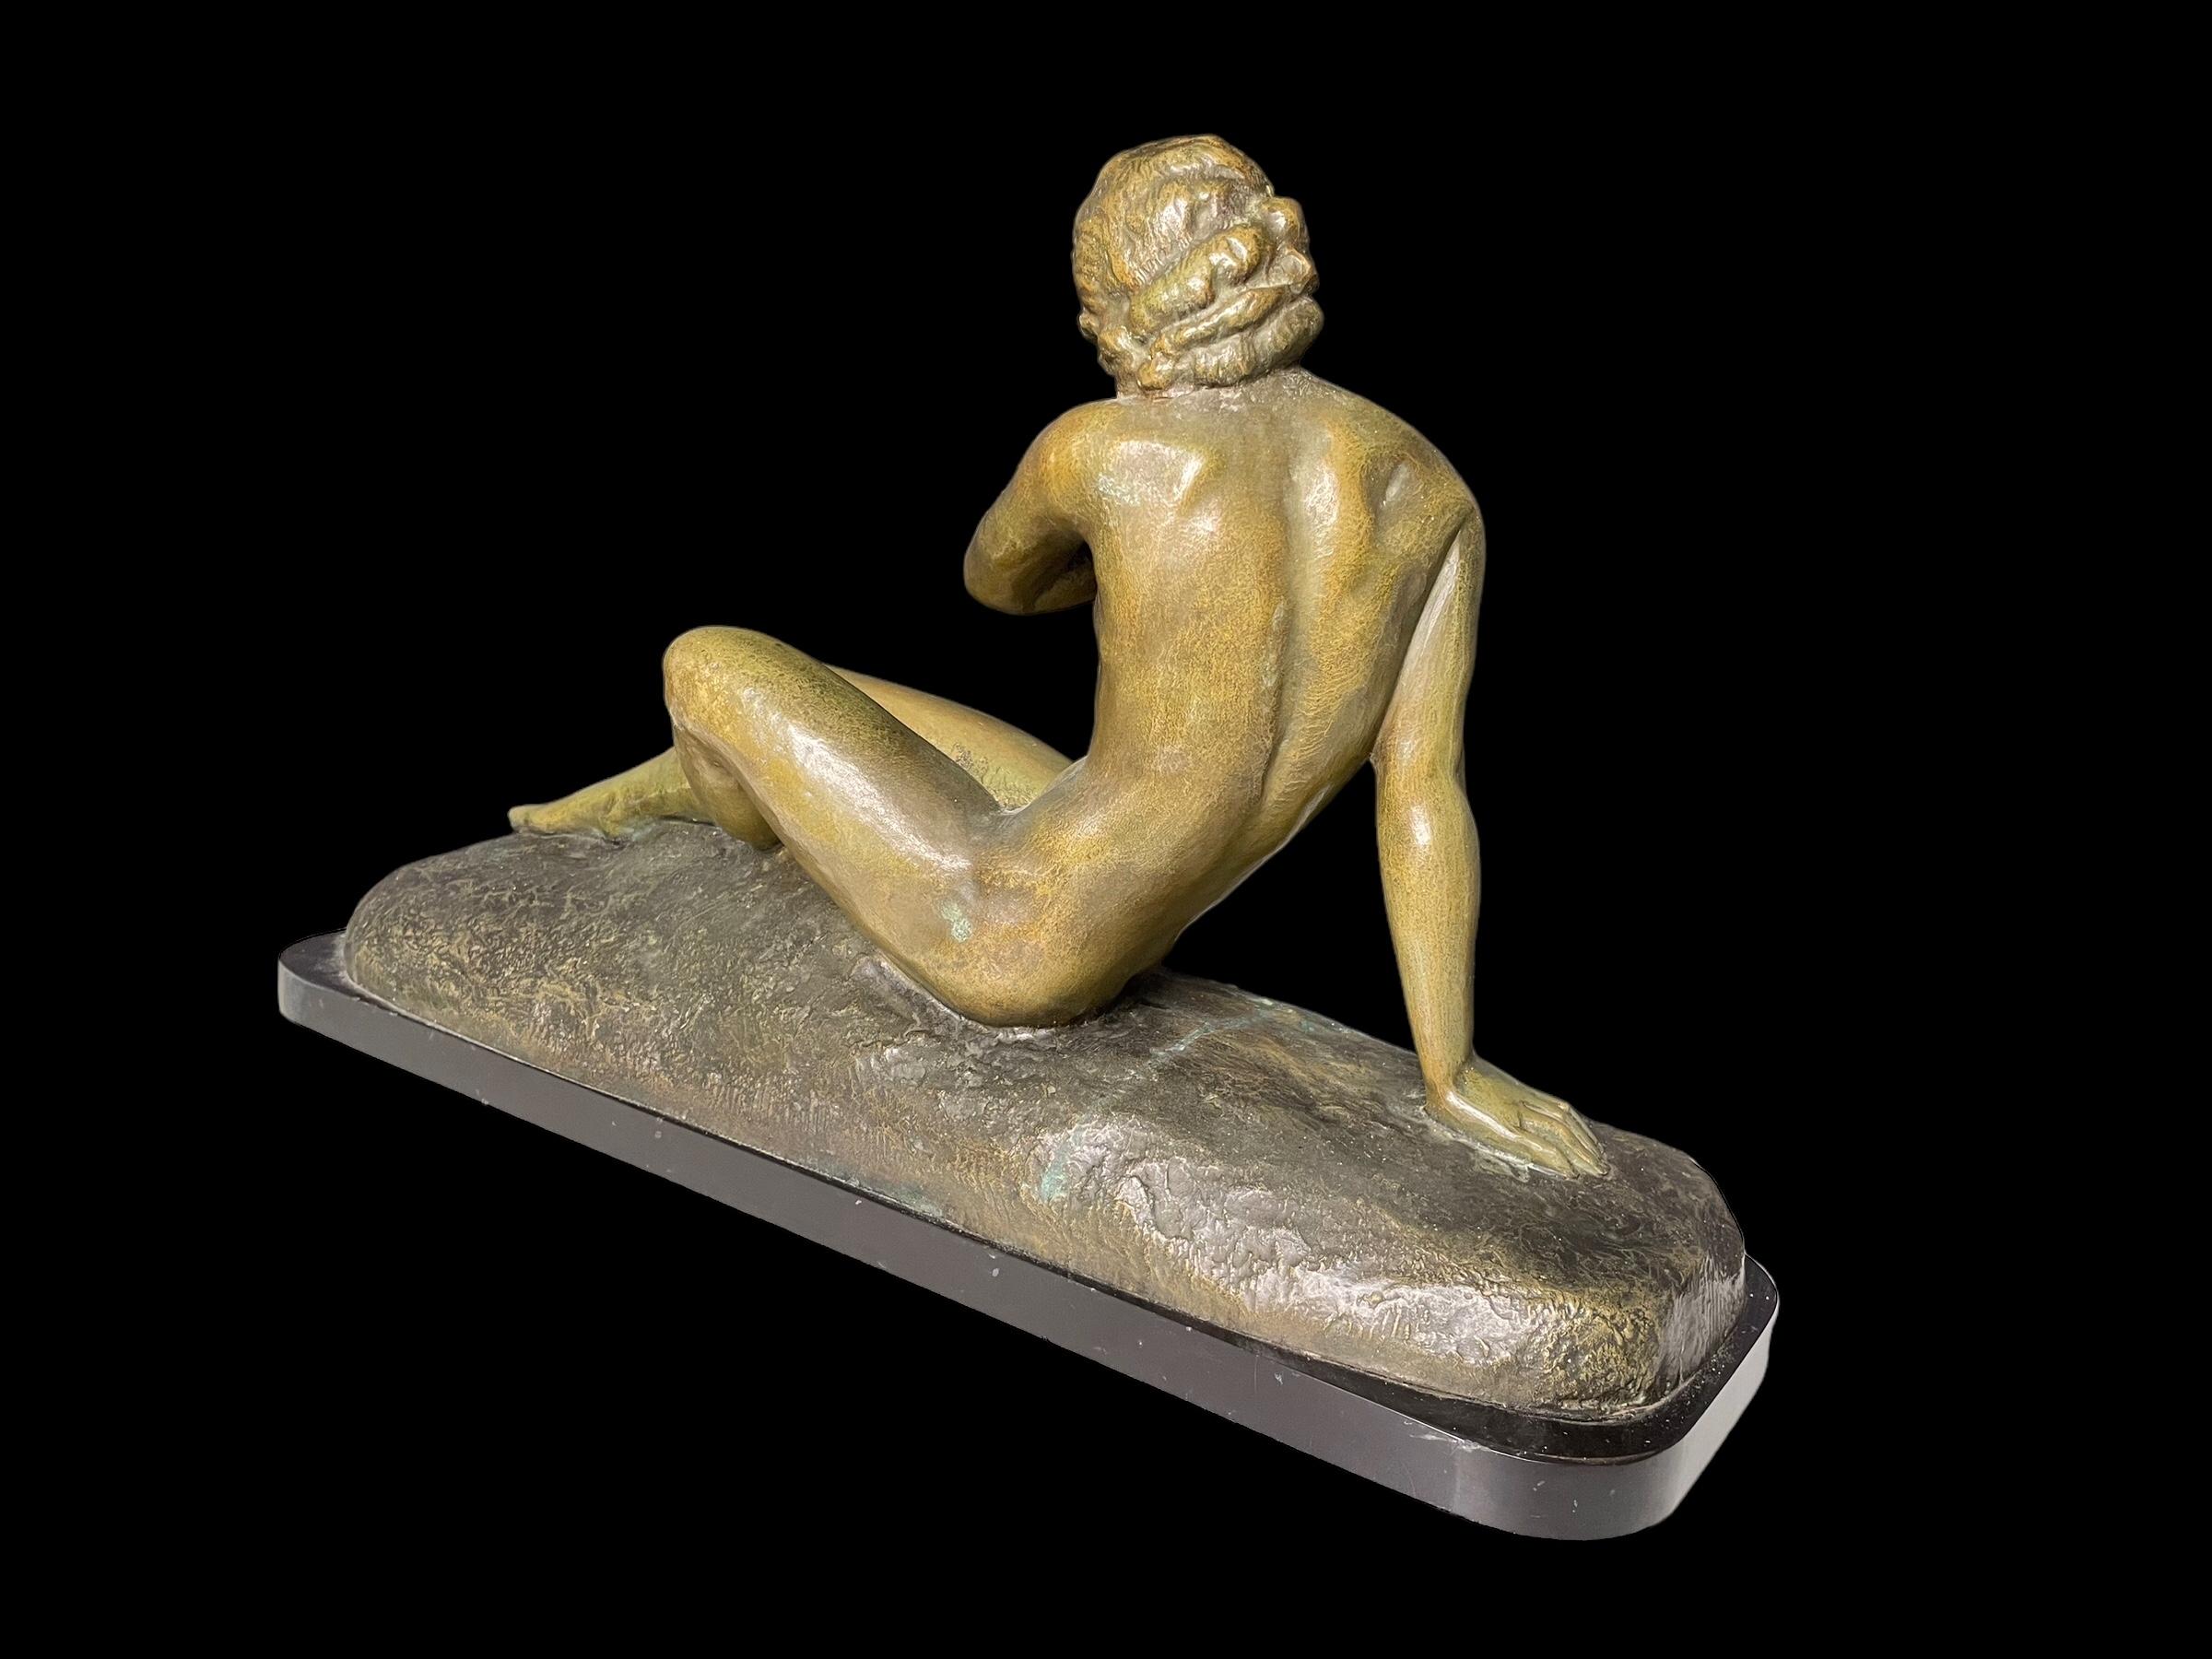 Eine schöne und große Bronze mit grüner Patina von dem bedeutenden Art-Déco-Bildhauer Ugo Cipriani.
Ein großartiges Beispiel für einen schönen, stilisierten, klassischen liegenden Akt. Ihre Körperhaltung, ihr Gesicht, ihre Hände und Füße sind